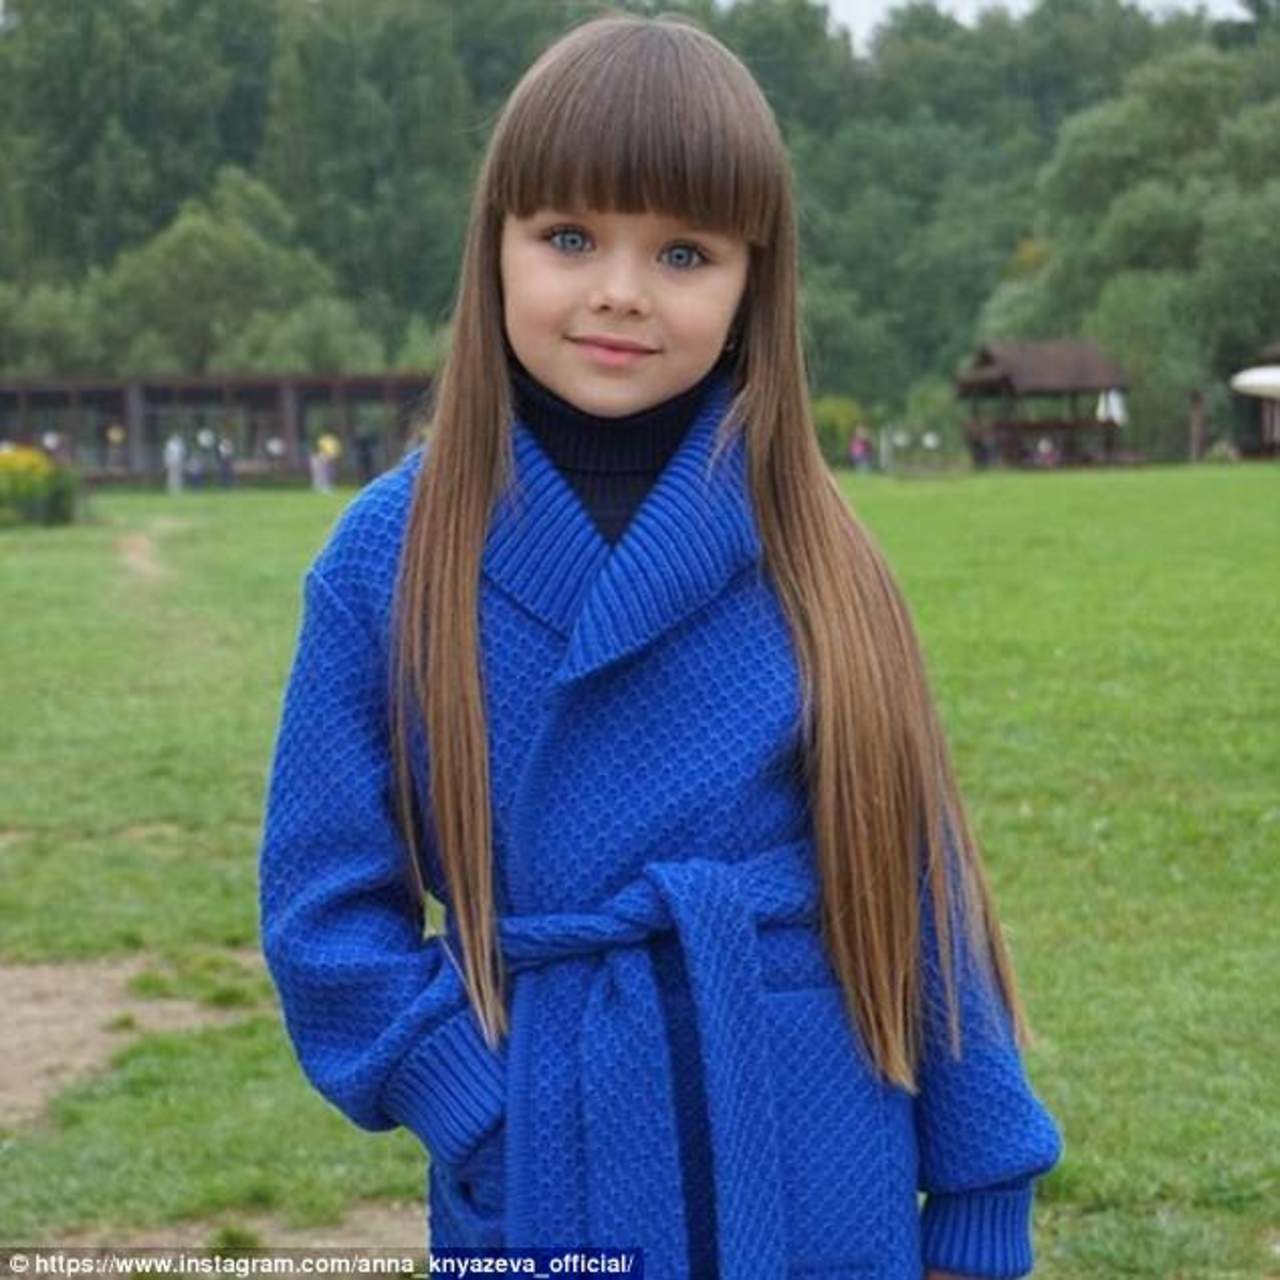 Anastasia Knyazeva, la niña aclamada como la más bella del mundo